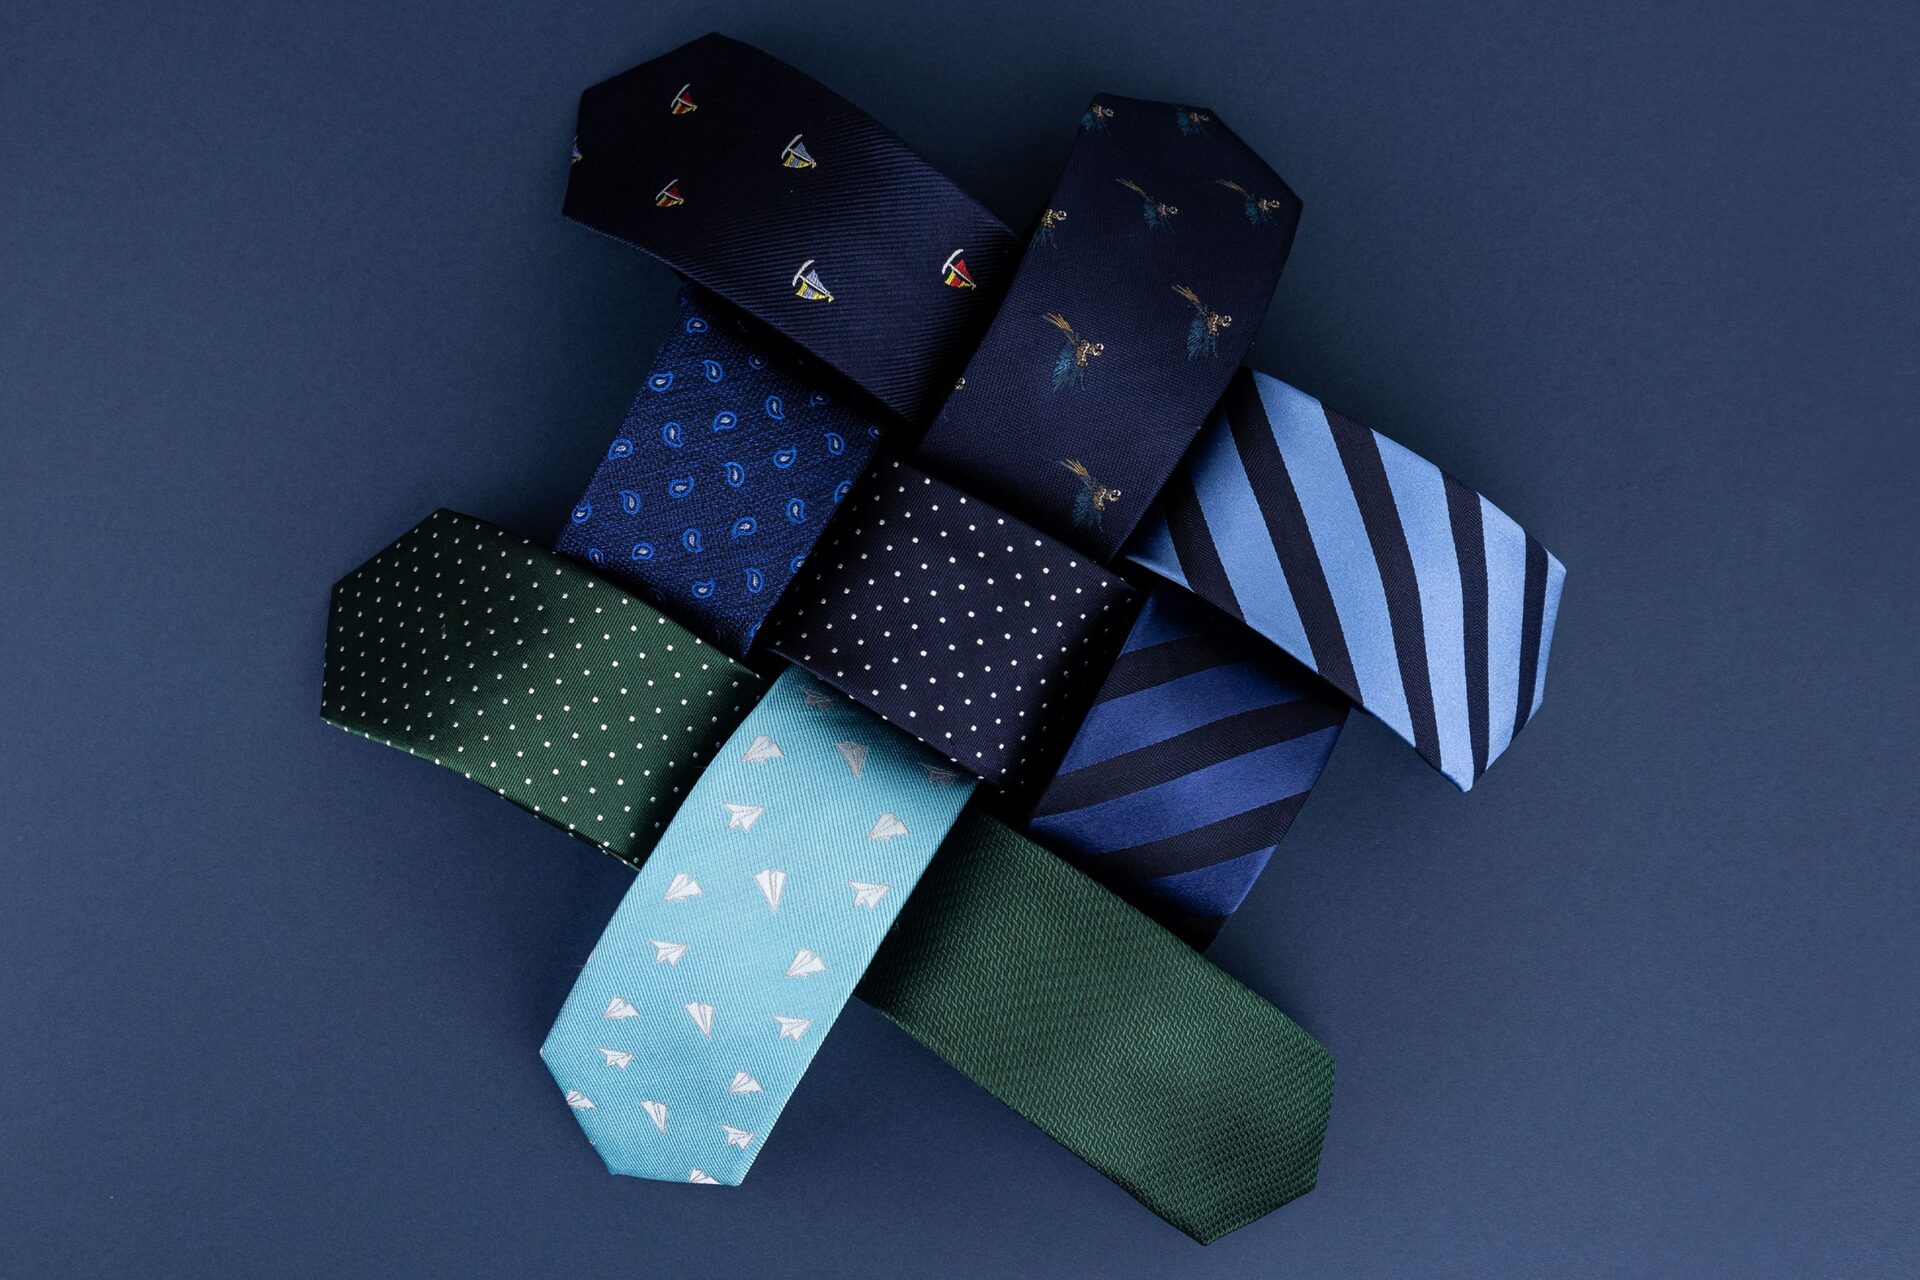 “Nossa missão é que as pessoas curtam esse processo de escolher a gravata. Que seja difícil decidir entre tantas opções bacanas, sabe?”, provoca a artesã Mirela Barcza